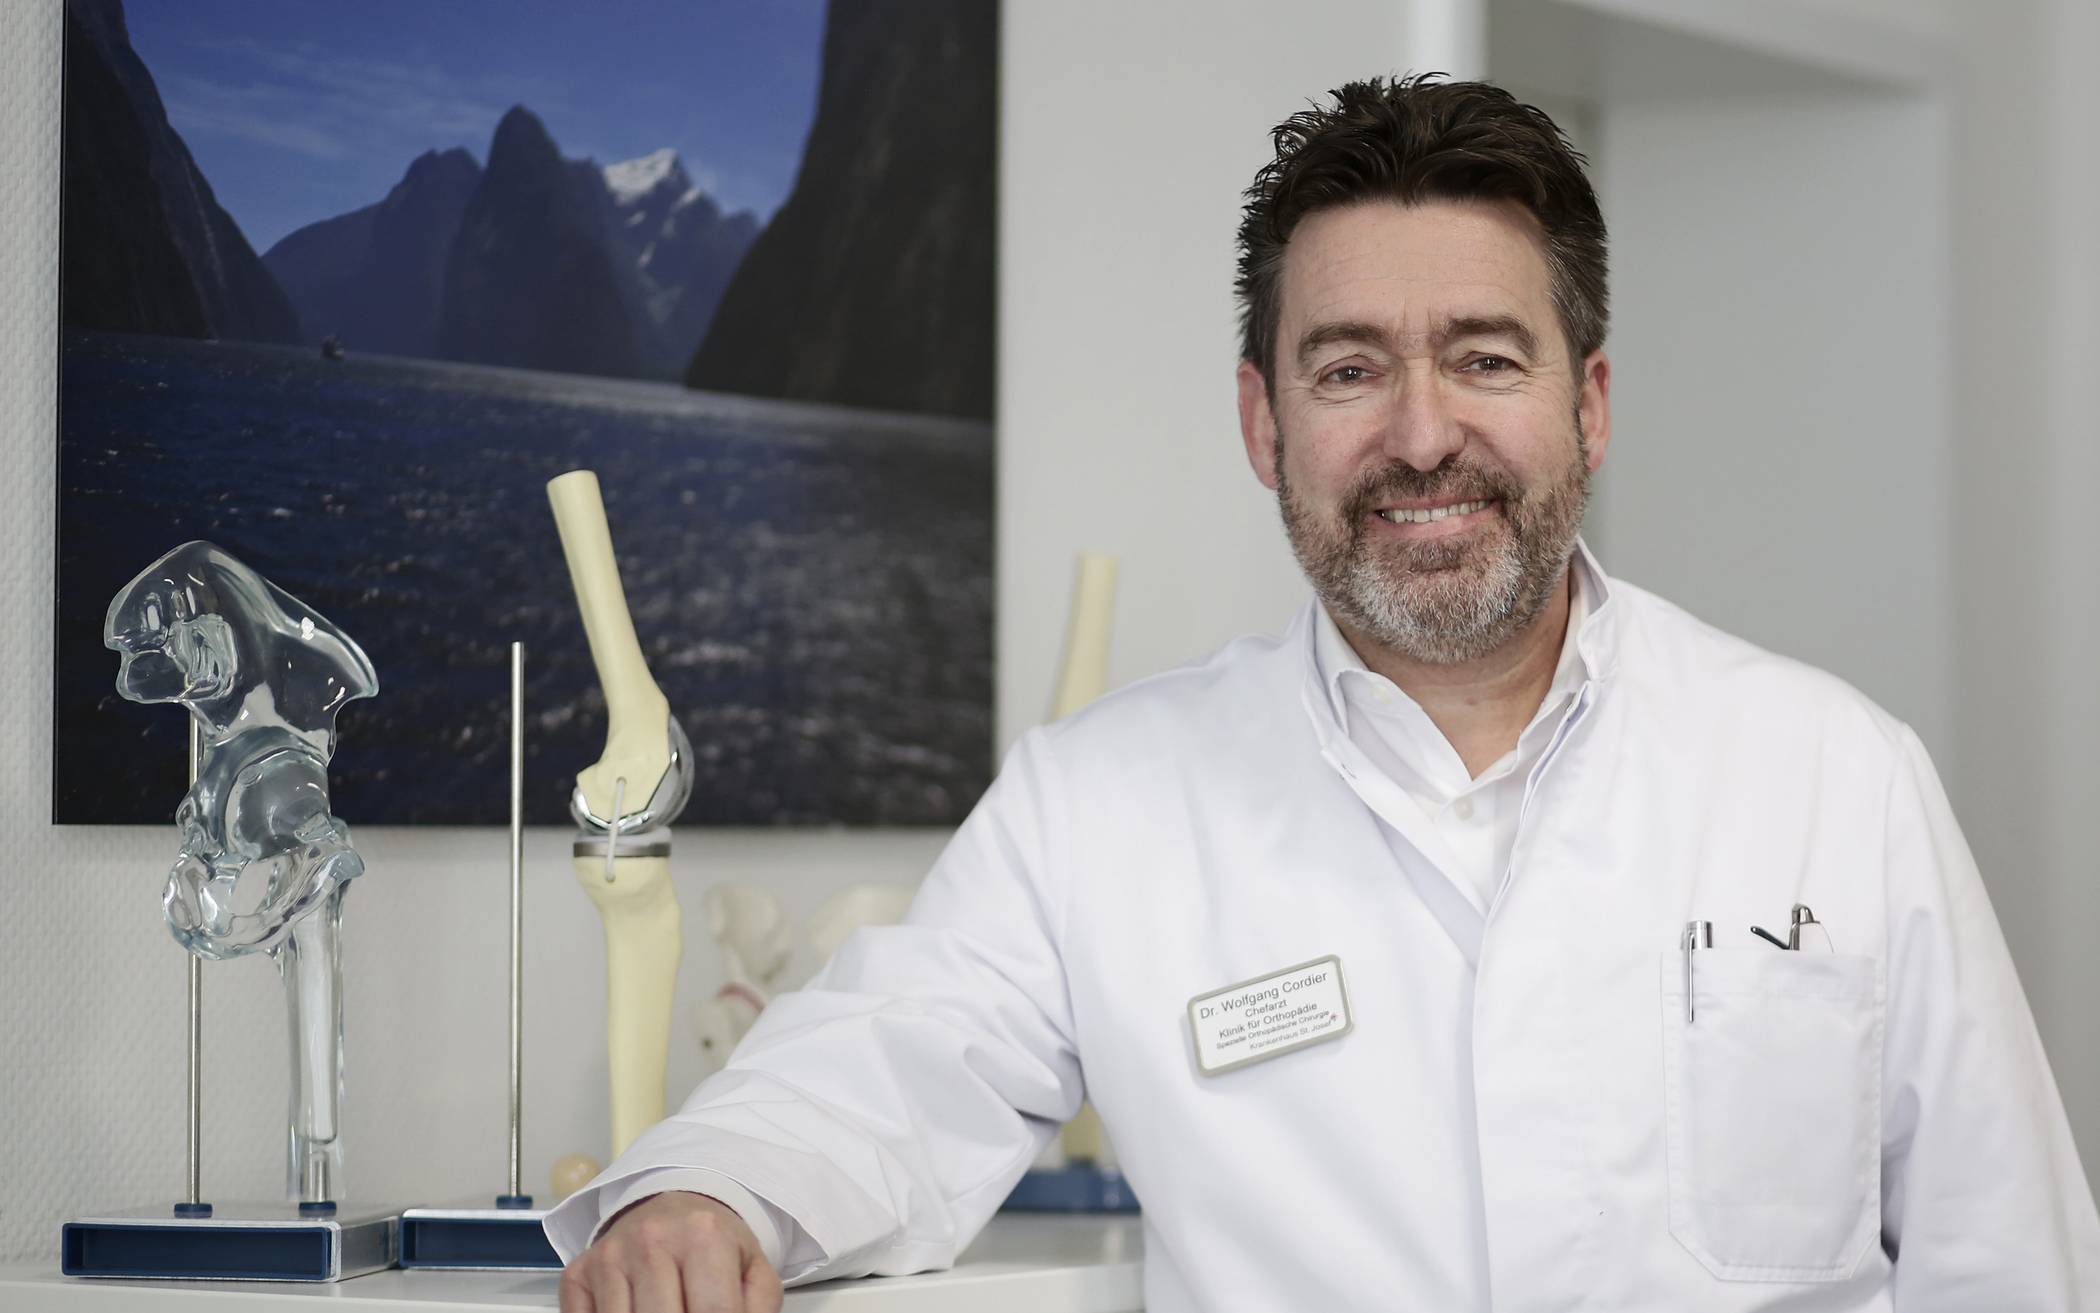  Dr. Wolfgang Cordier ist Chefarzt Endoprothetikzentrums der Maximalversorgung am Wuppertaler Krankenhaus St. Josef, das über 50 Jahre Erfahrung auf diesem Gebiet verfügt. 